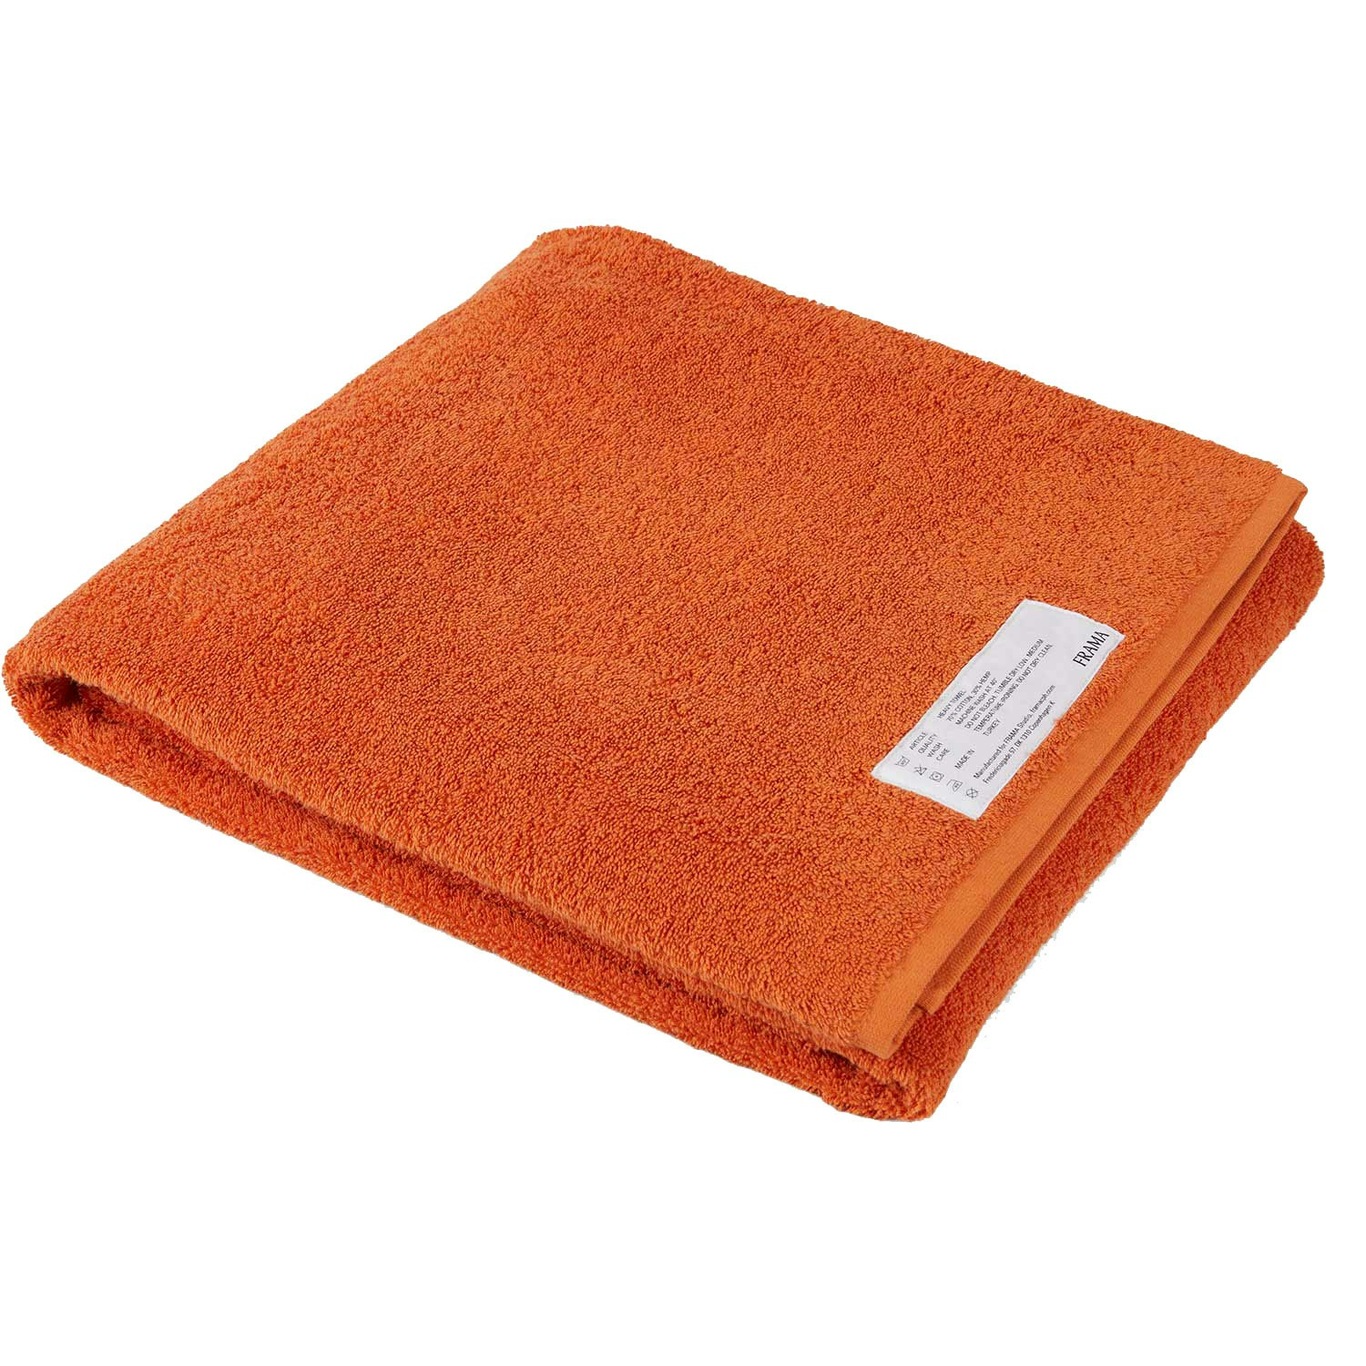 Heavy Towel Badelagen 100x150 cm, Burnt Orange